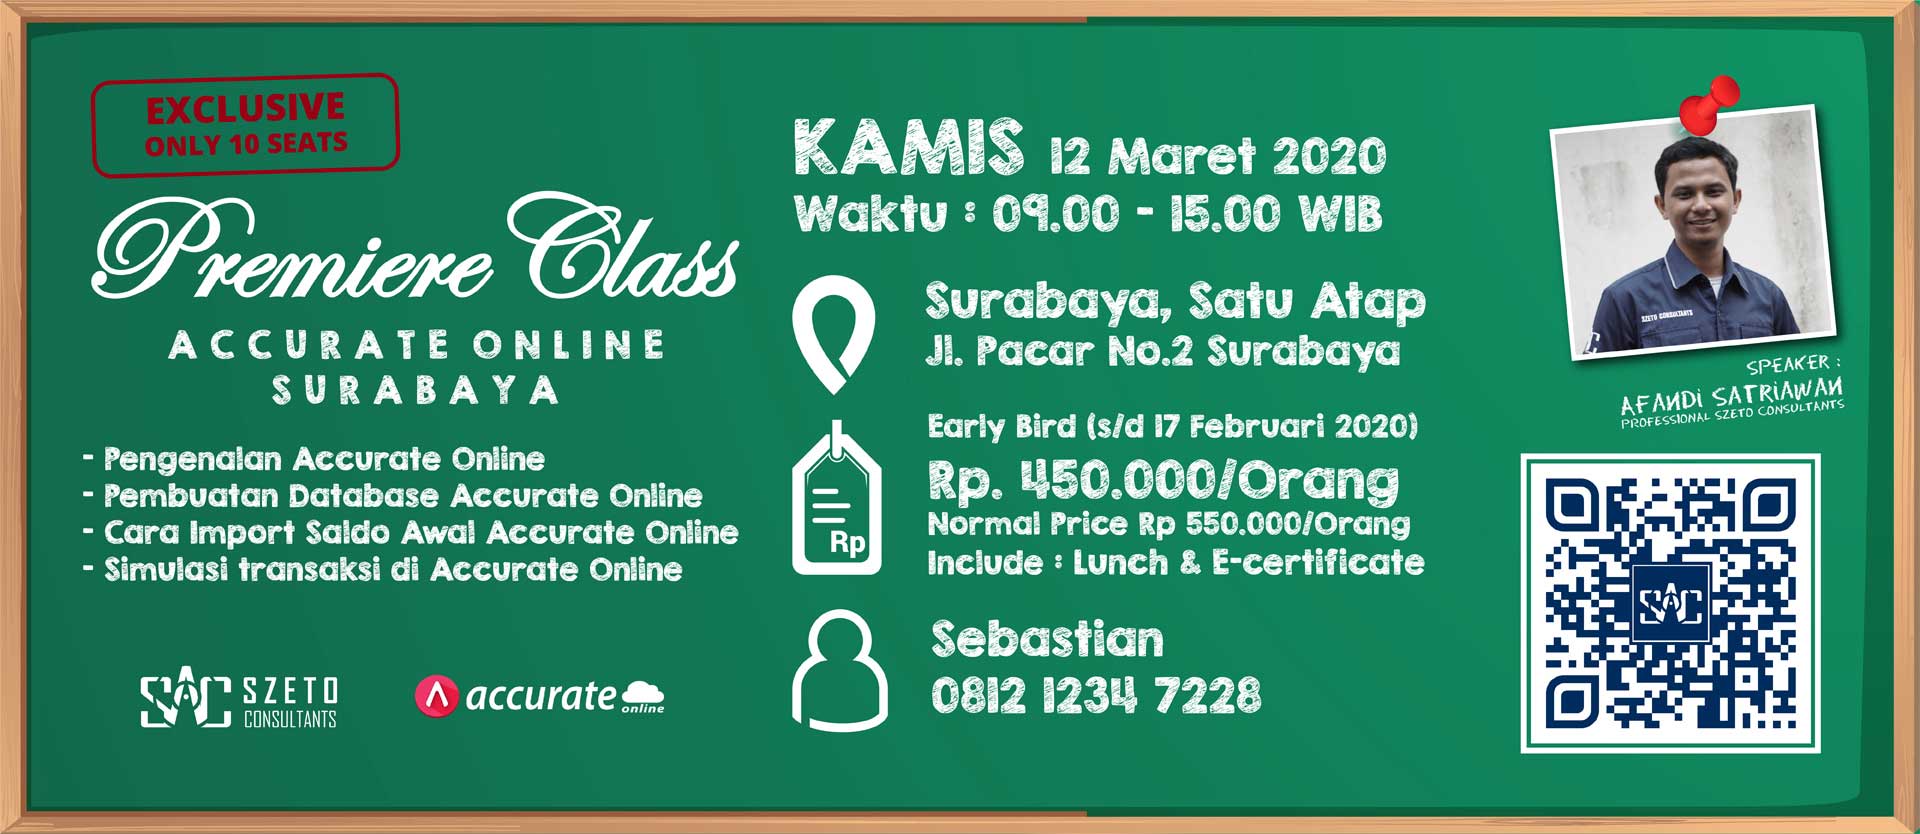 [Surabaya] Premiere Class